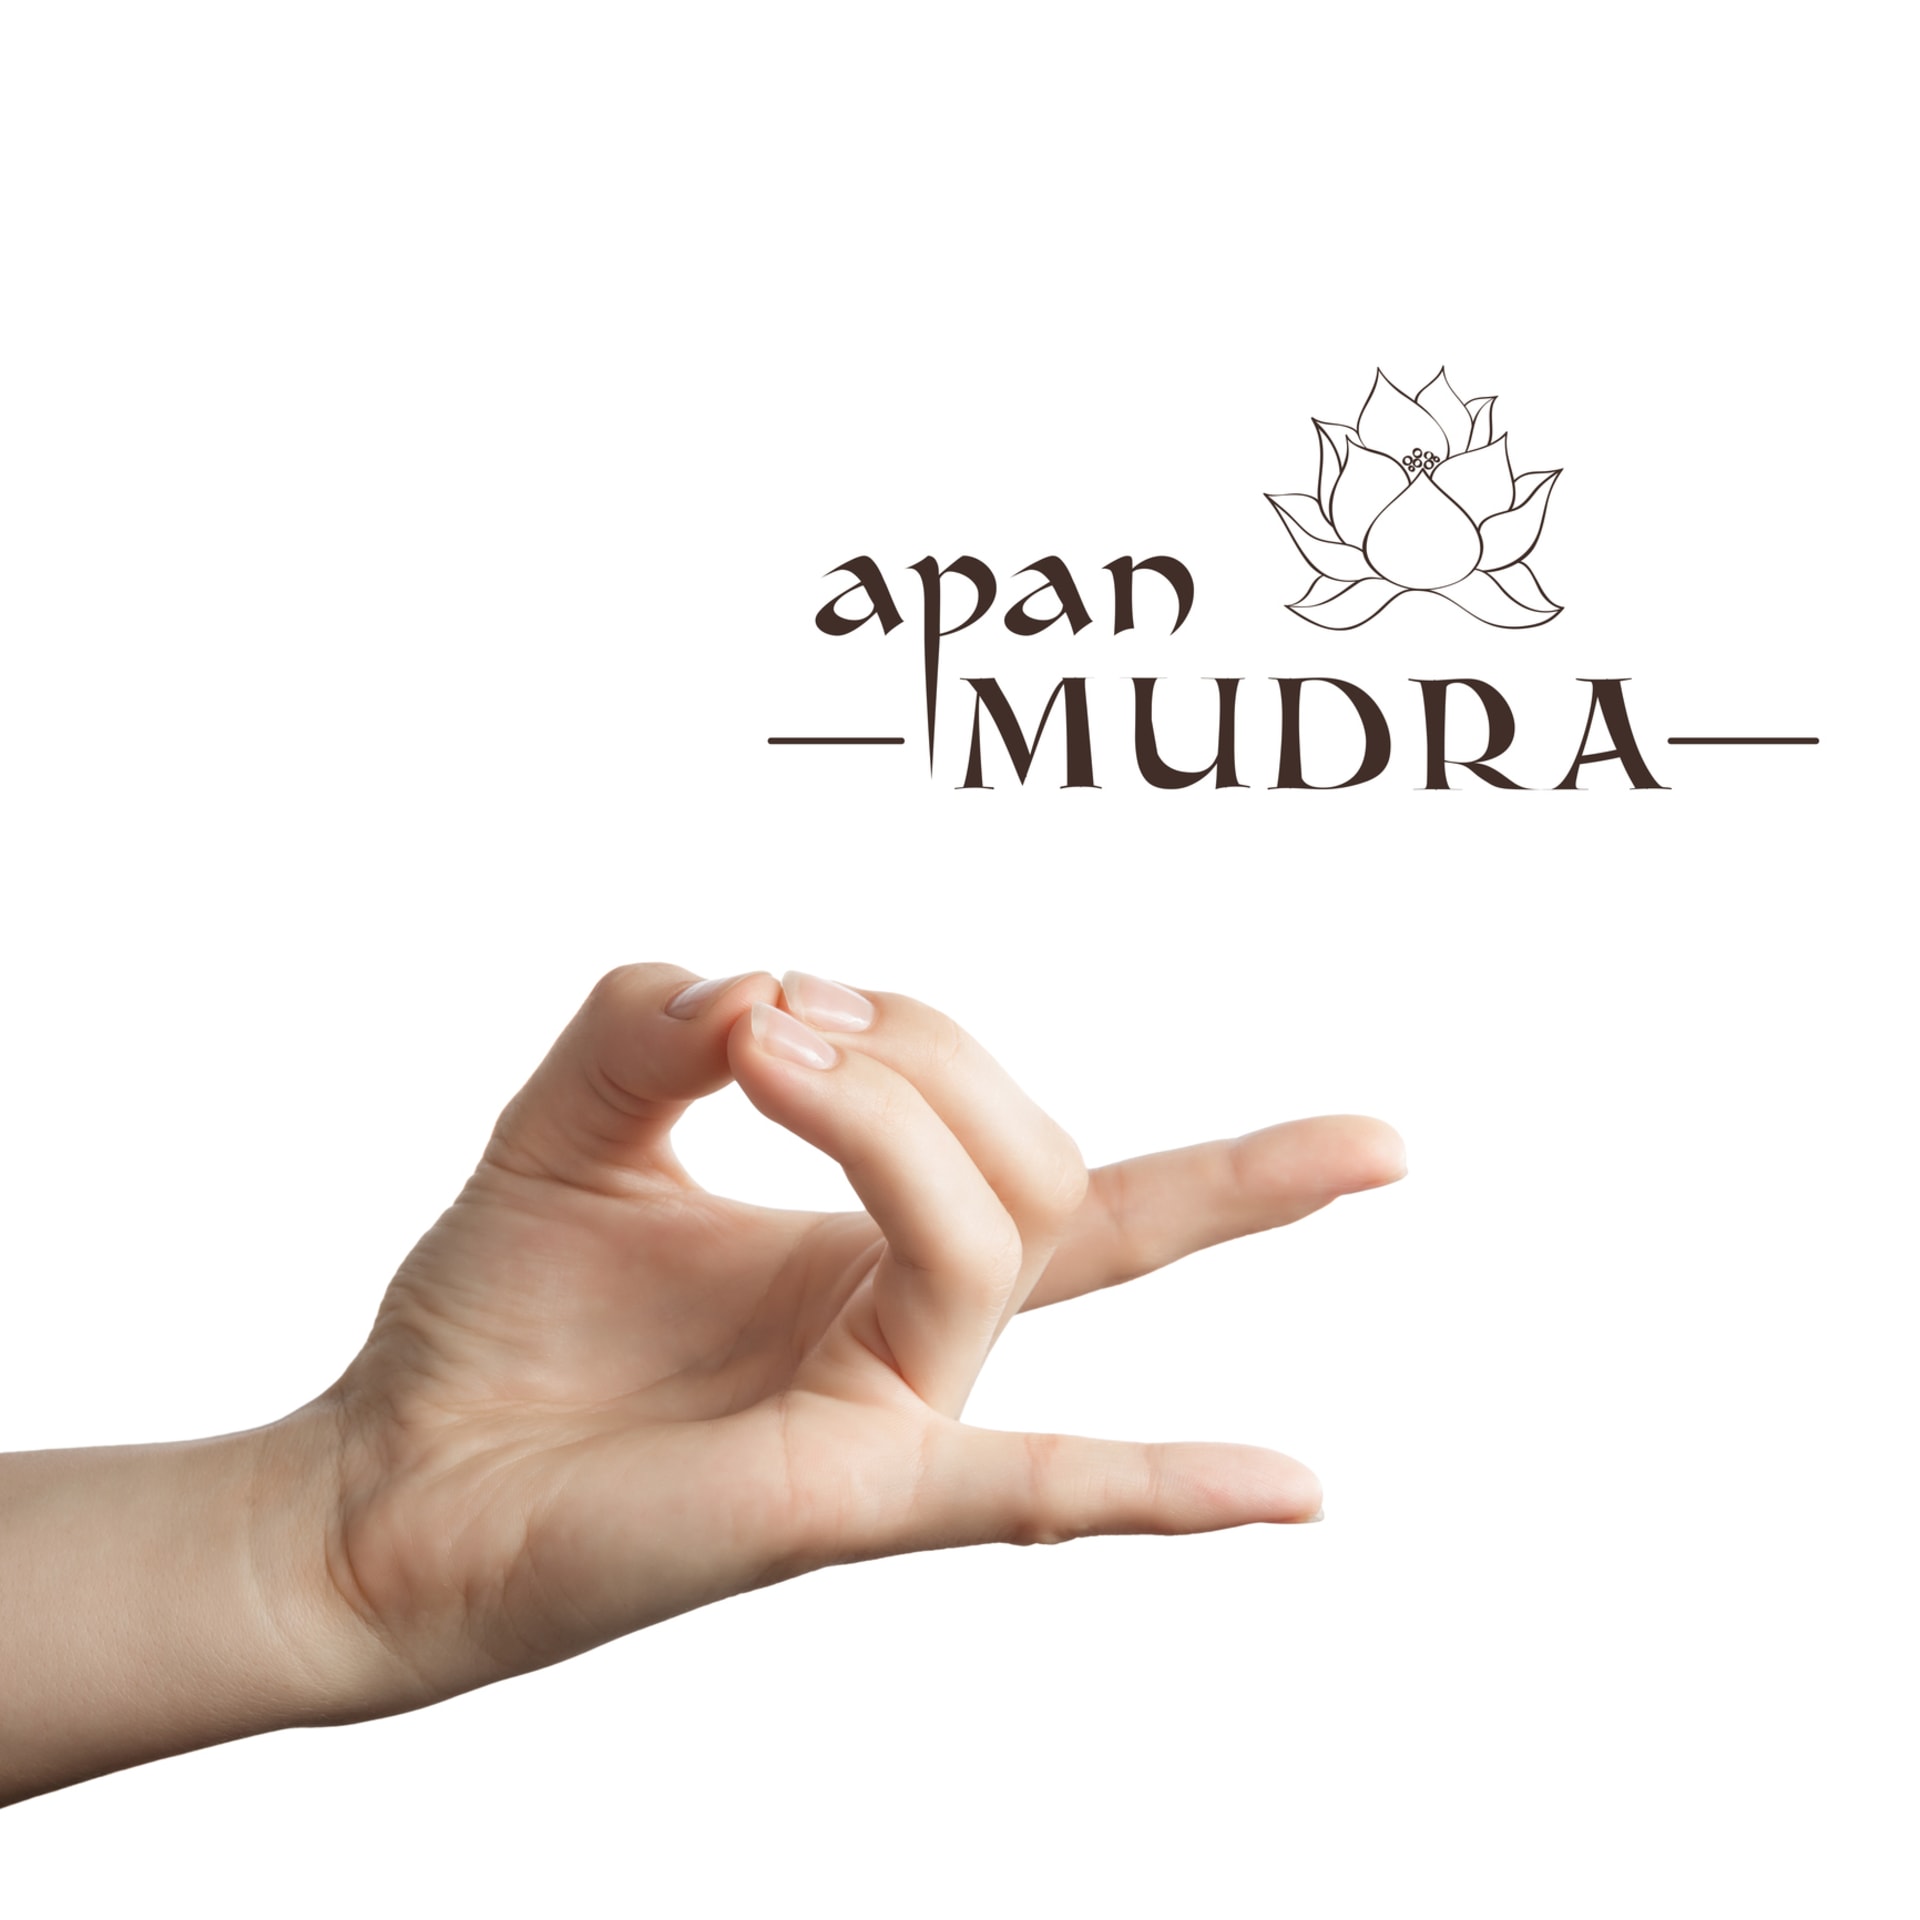 Apan Mudra pomáhá z těla odstraňovat škodlivé látky nebo zmírňuje bolesti.